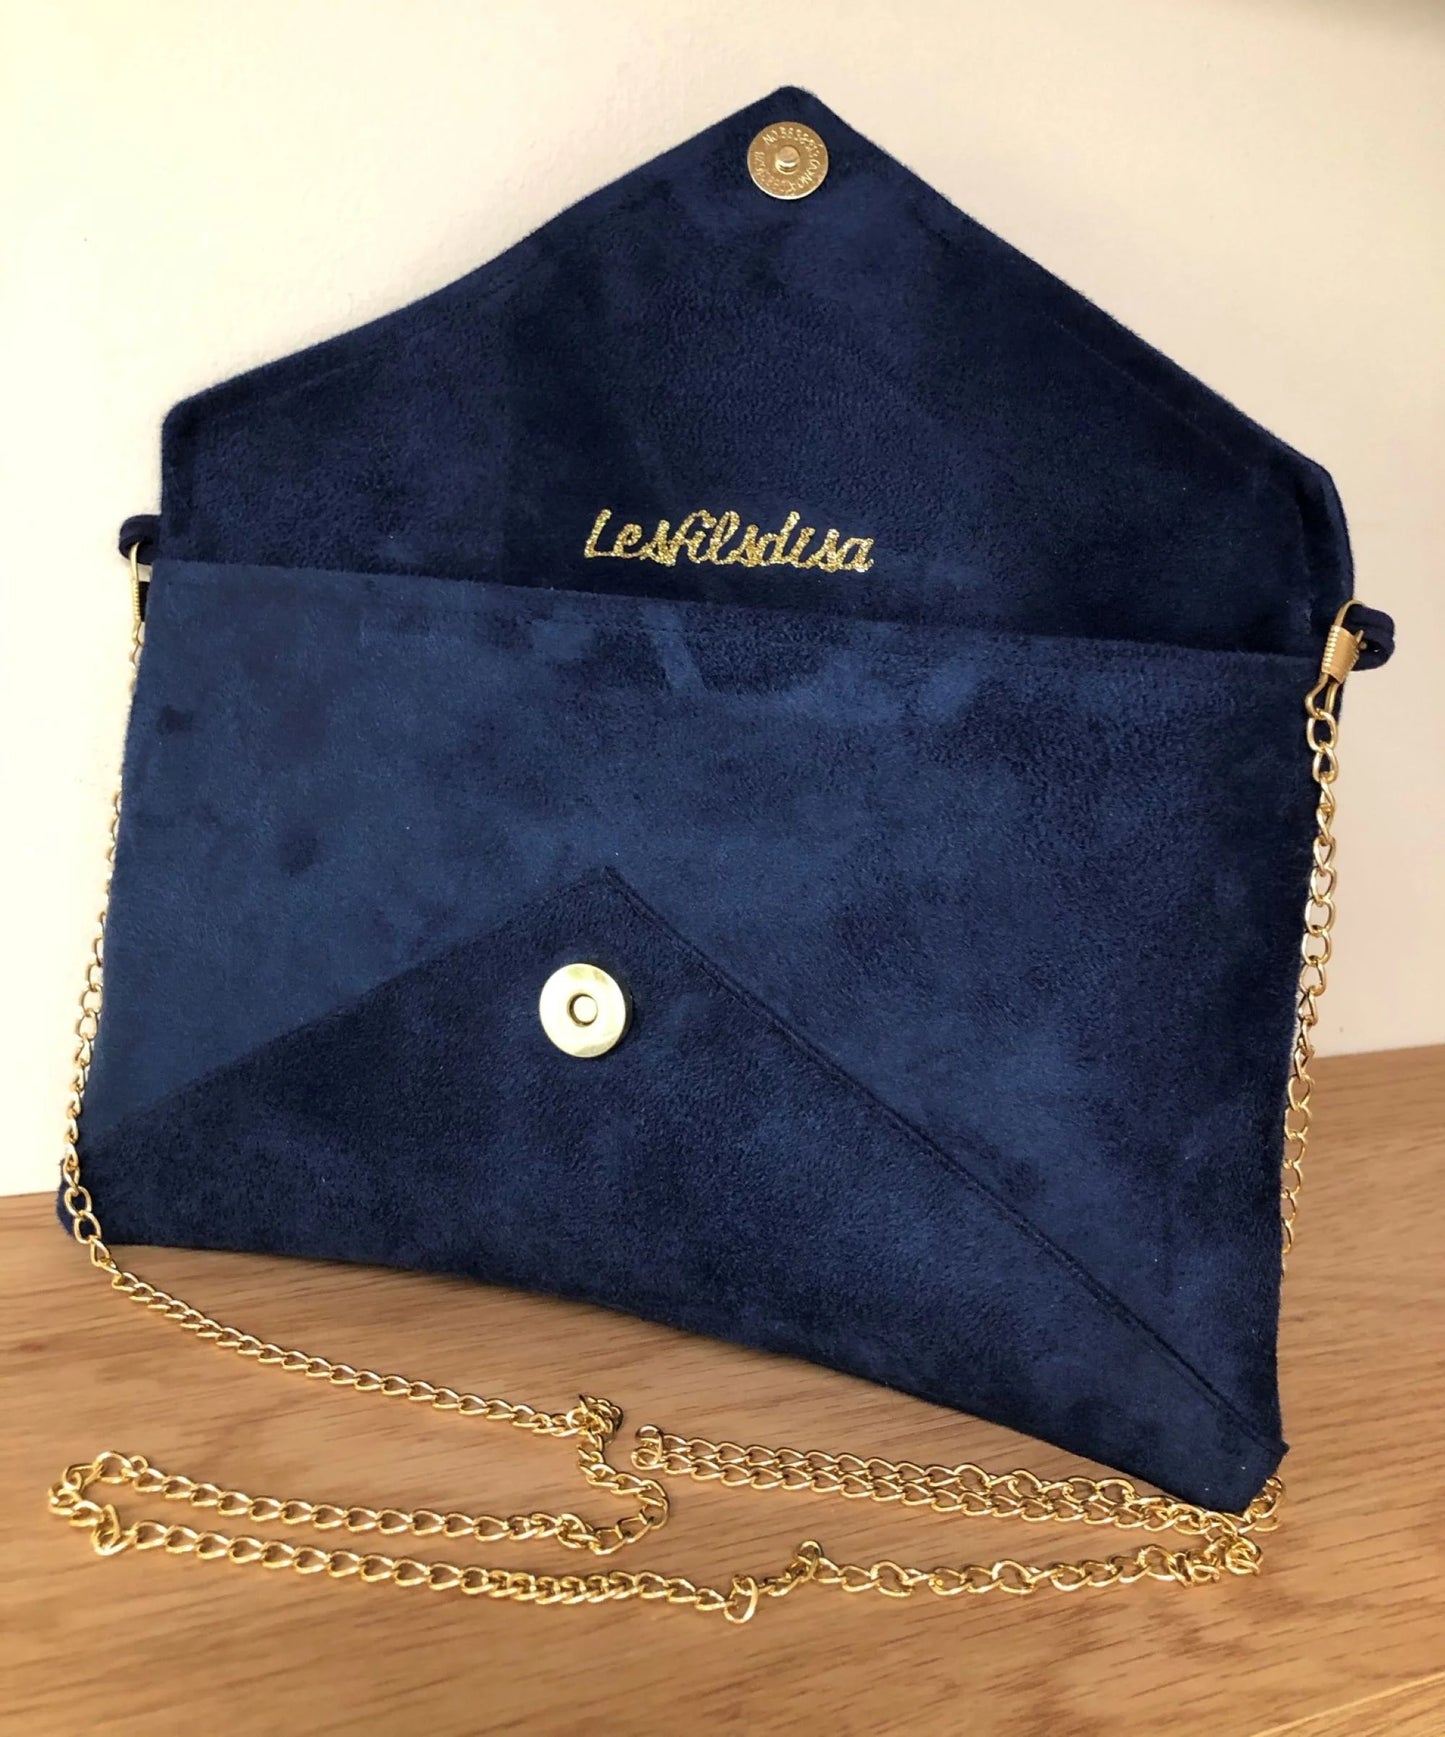 Le sac pochette Isa bleu marine et lin doré, ouvert,  avec chainette amovible